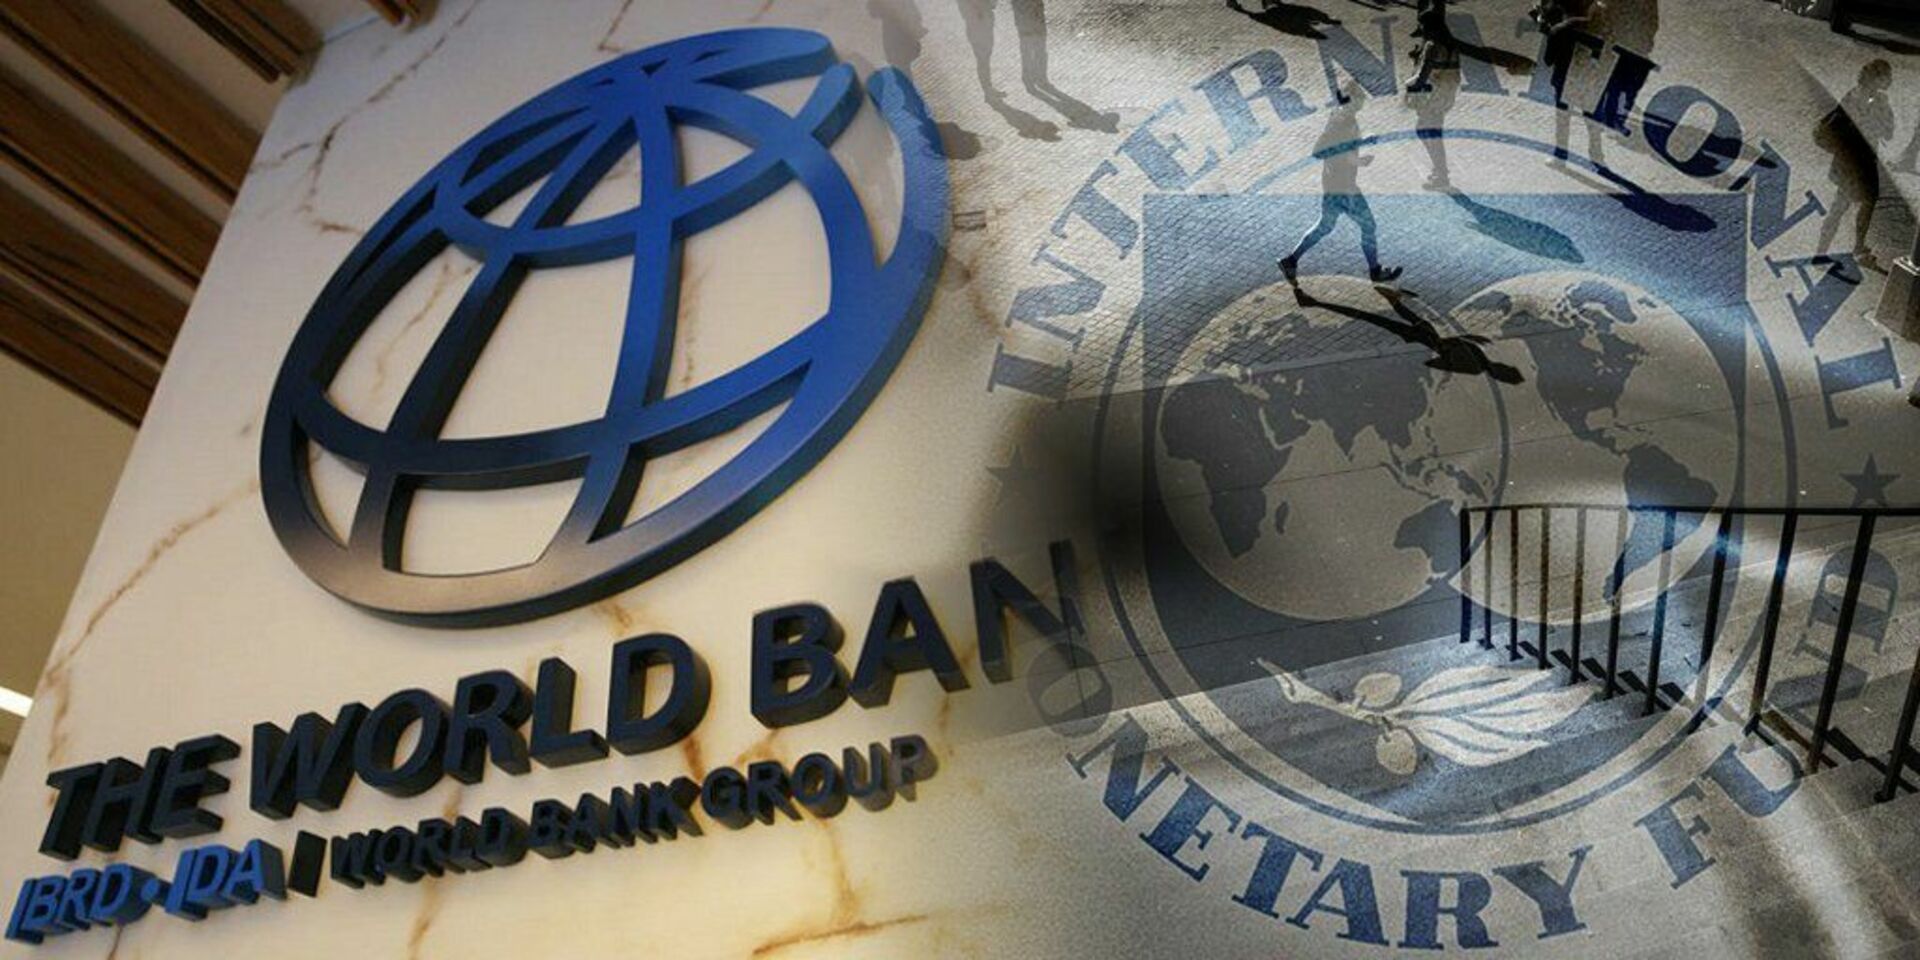 Всемирный валютный банк. МВФ И Всемирный банк. Международный валютный фонд и группа Всемирного банка. Всемирного банка МВФ. Всемирный банк ООН.